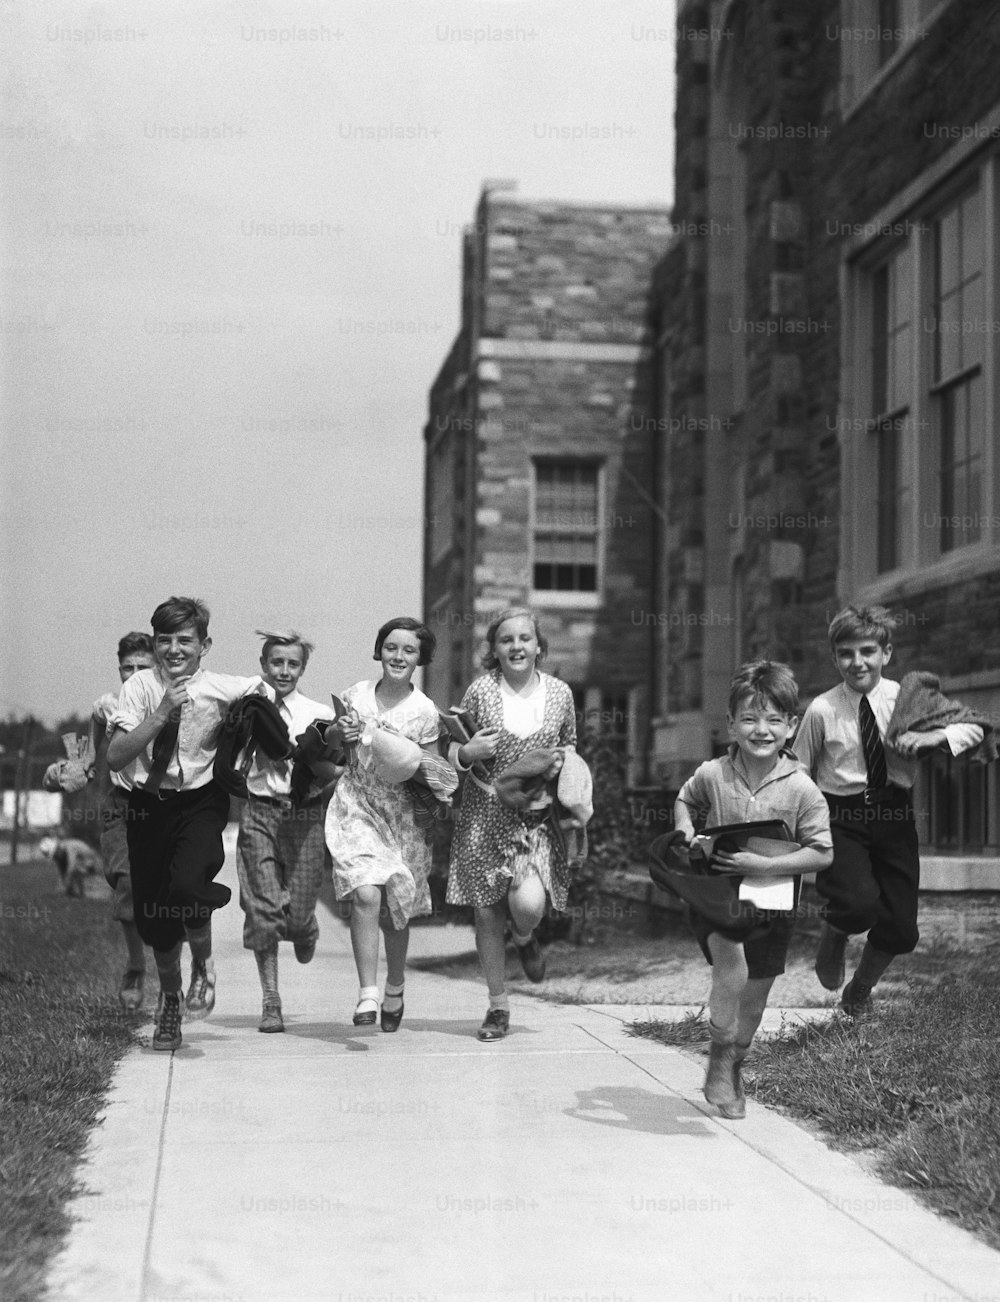 STATI UNITI - 1930 circa: sette bambini che corrono lungo il marciapiede, fuori dalla scuola.